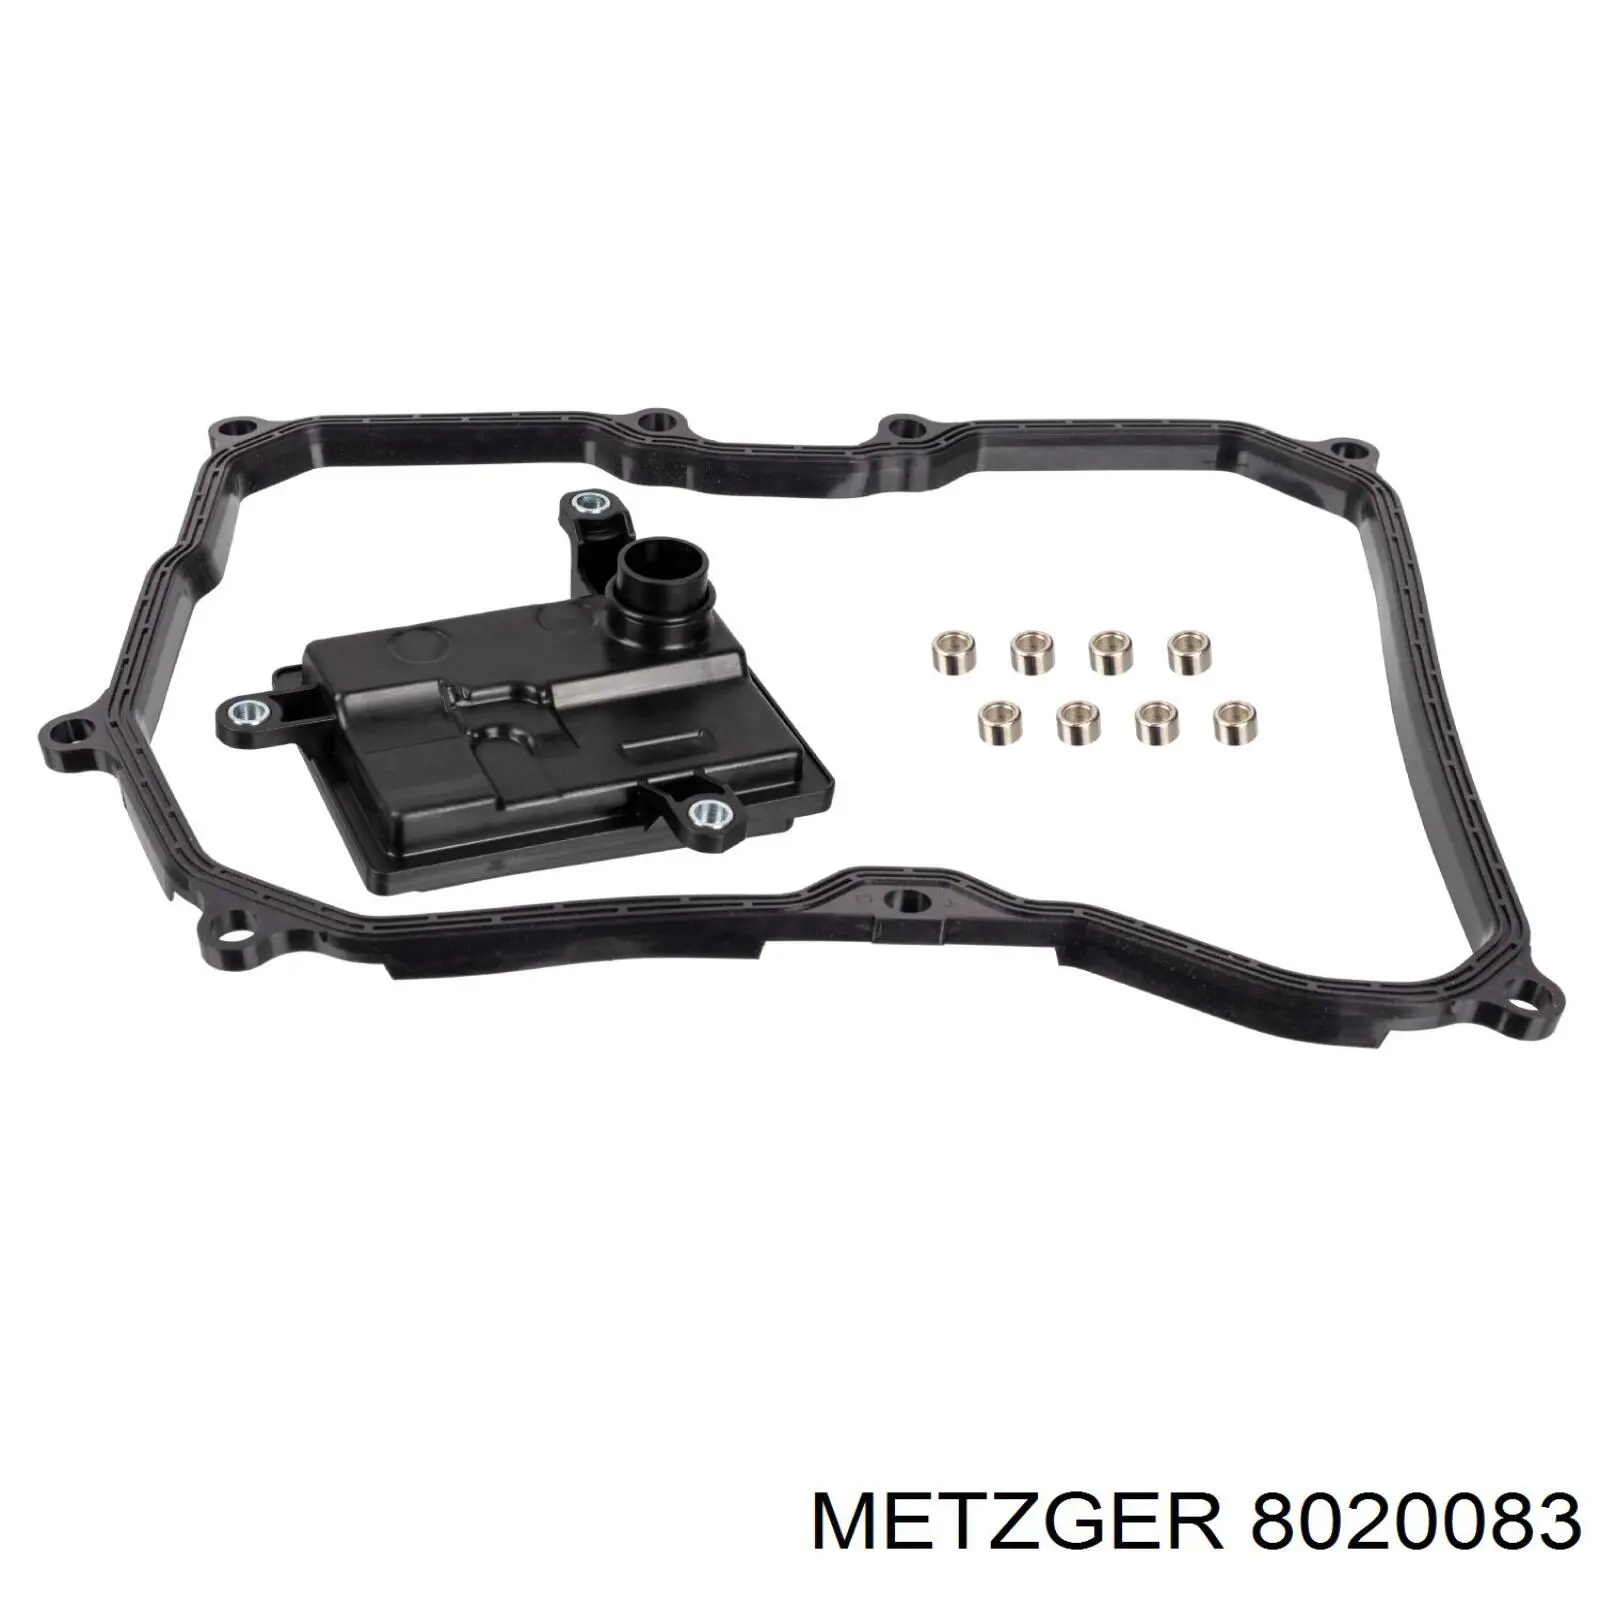 8020083 Metzger filtro de transmisión automática